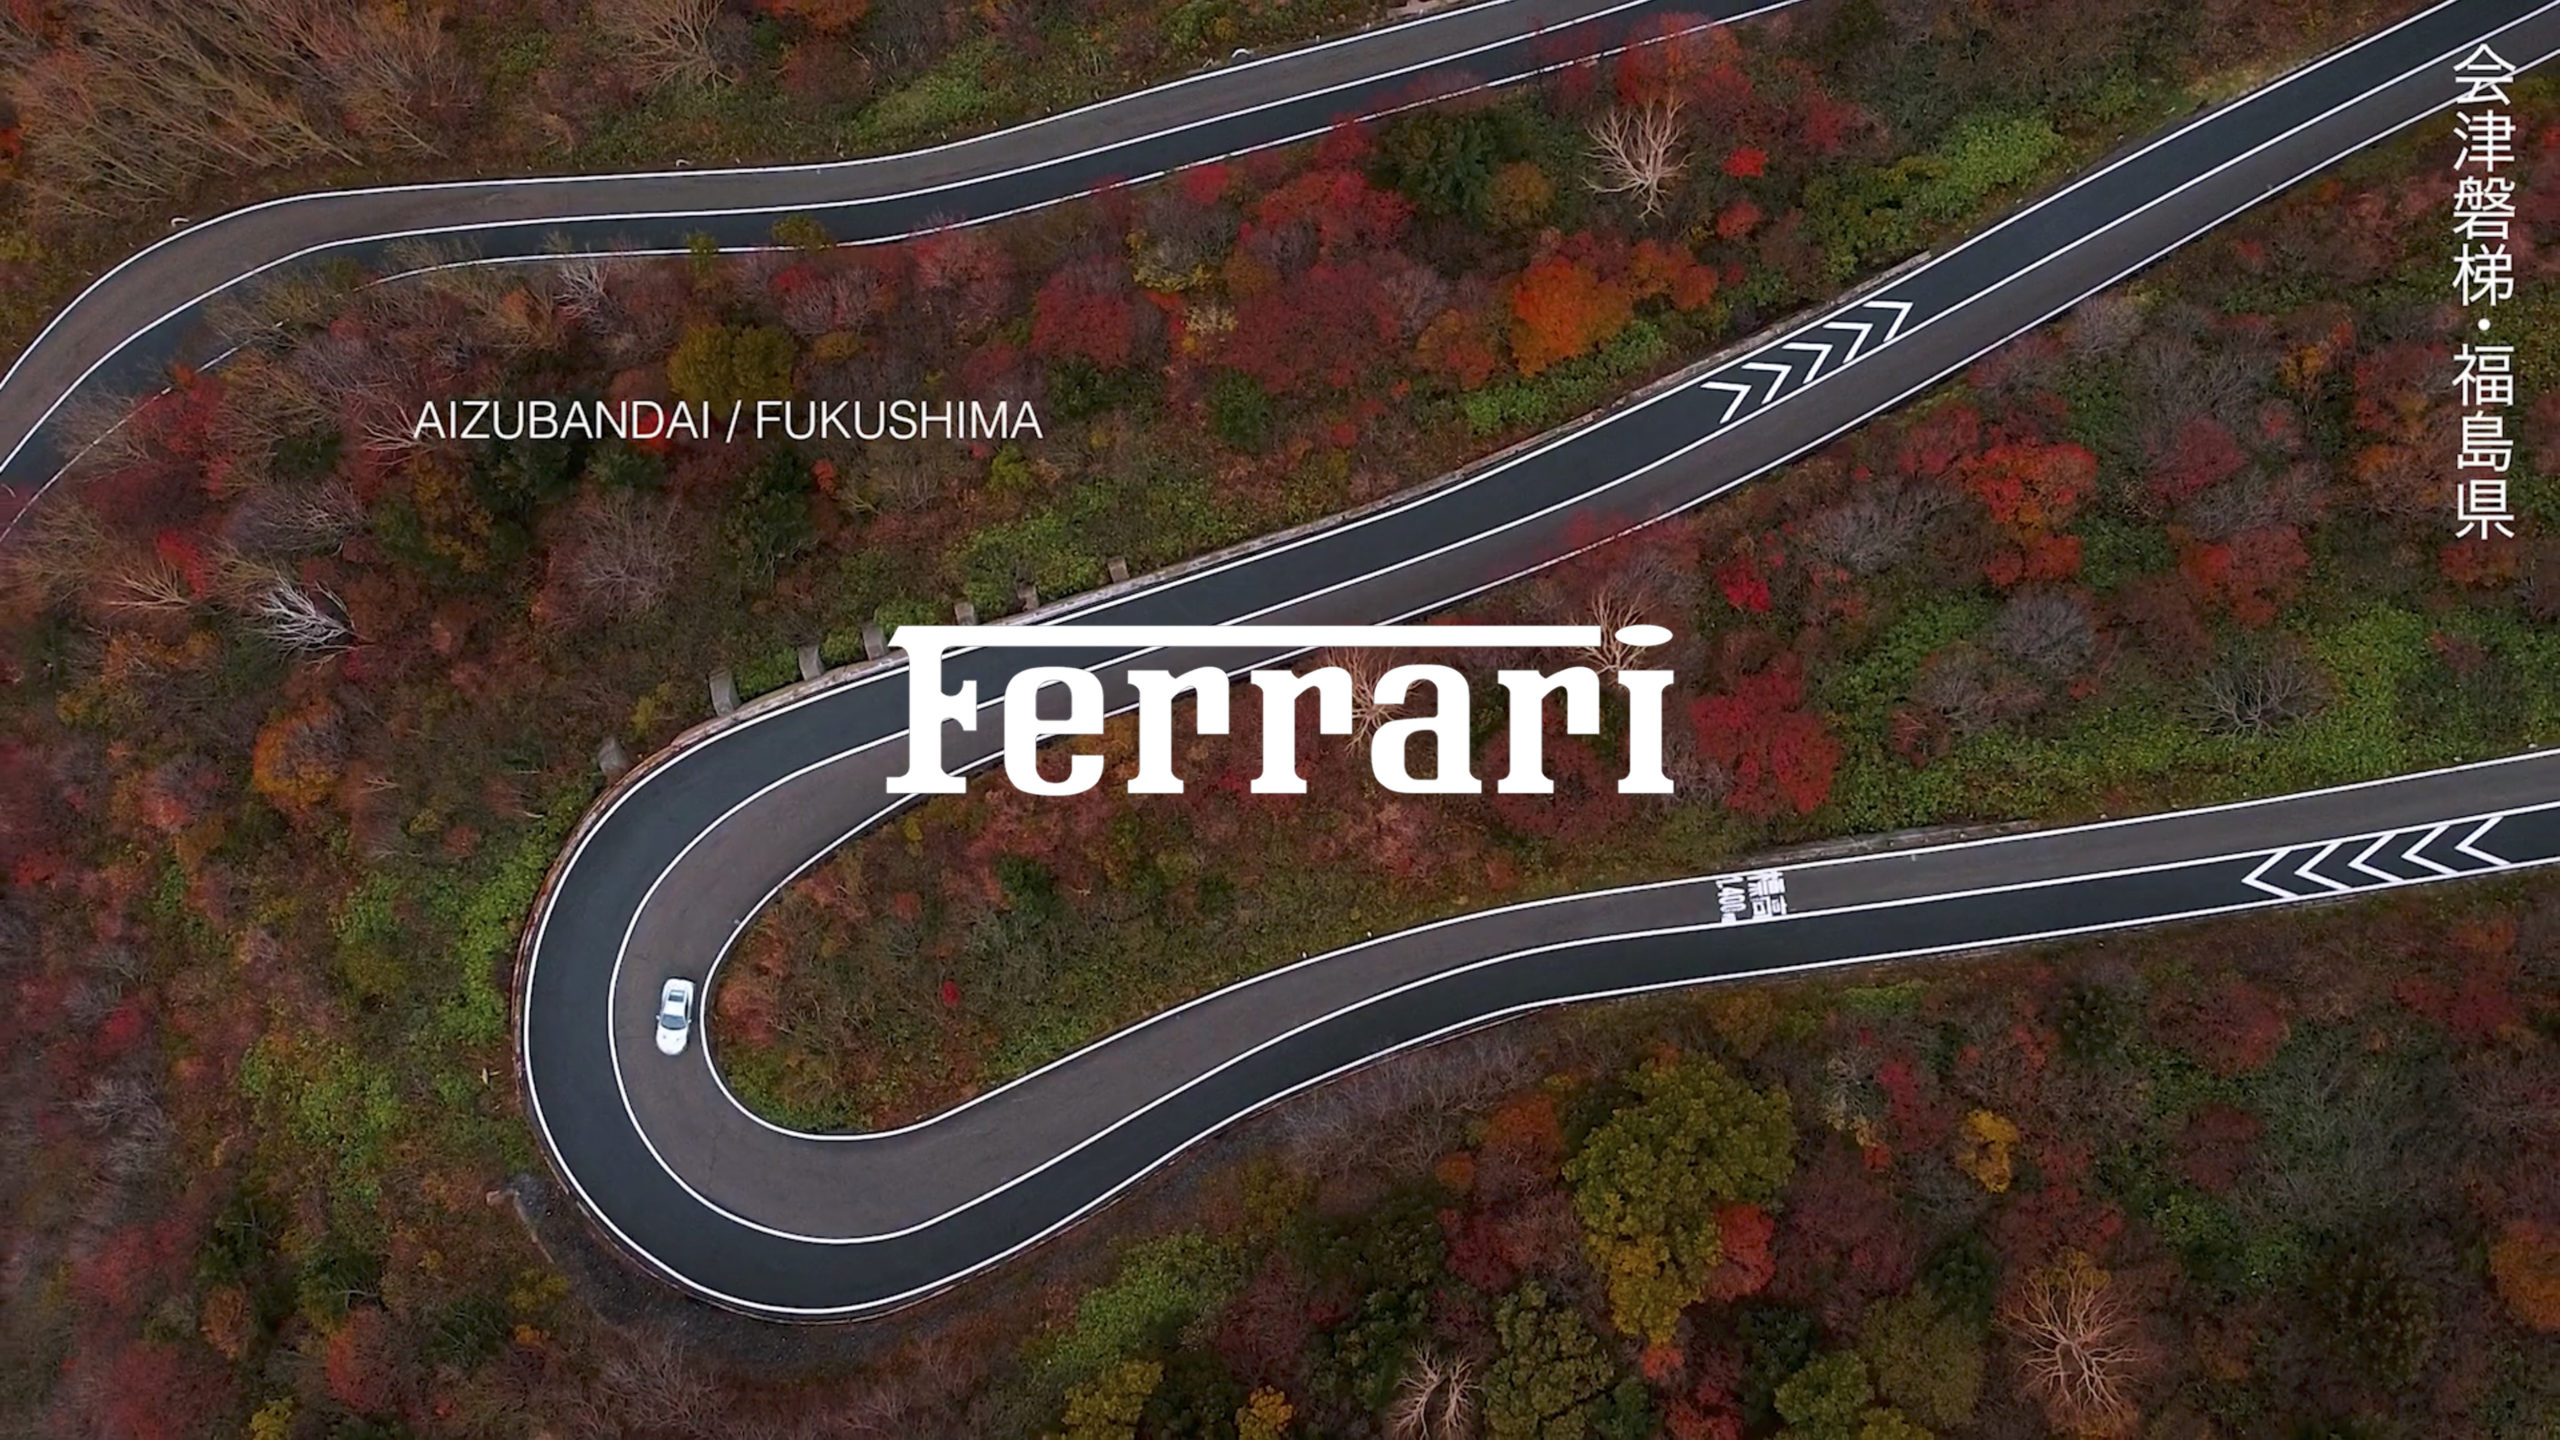 Ferrari Travel Diary directors